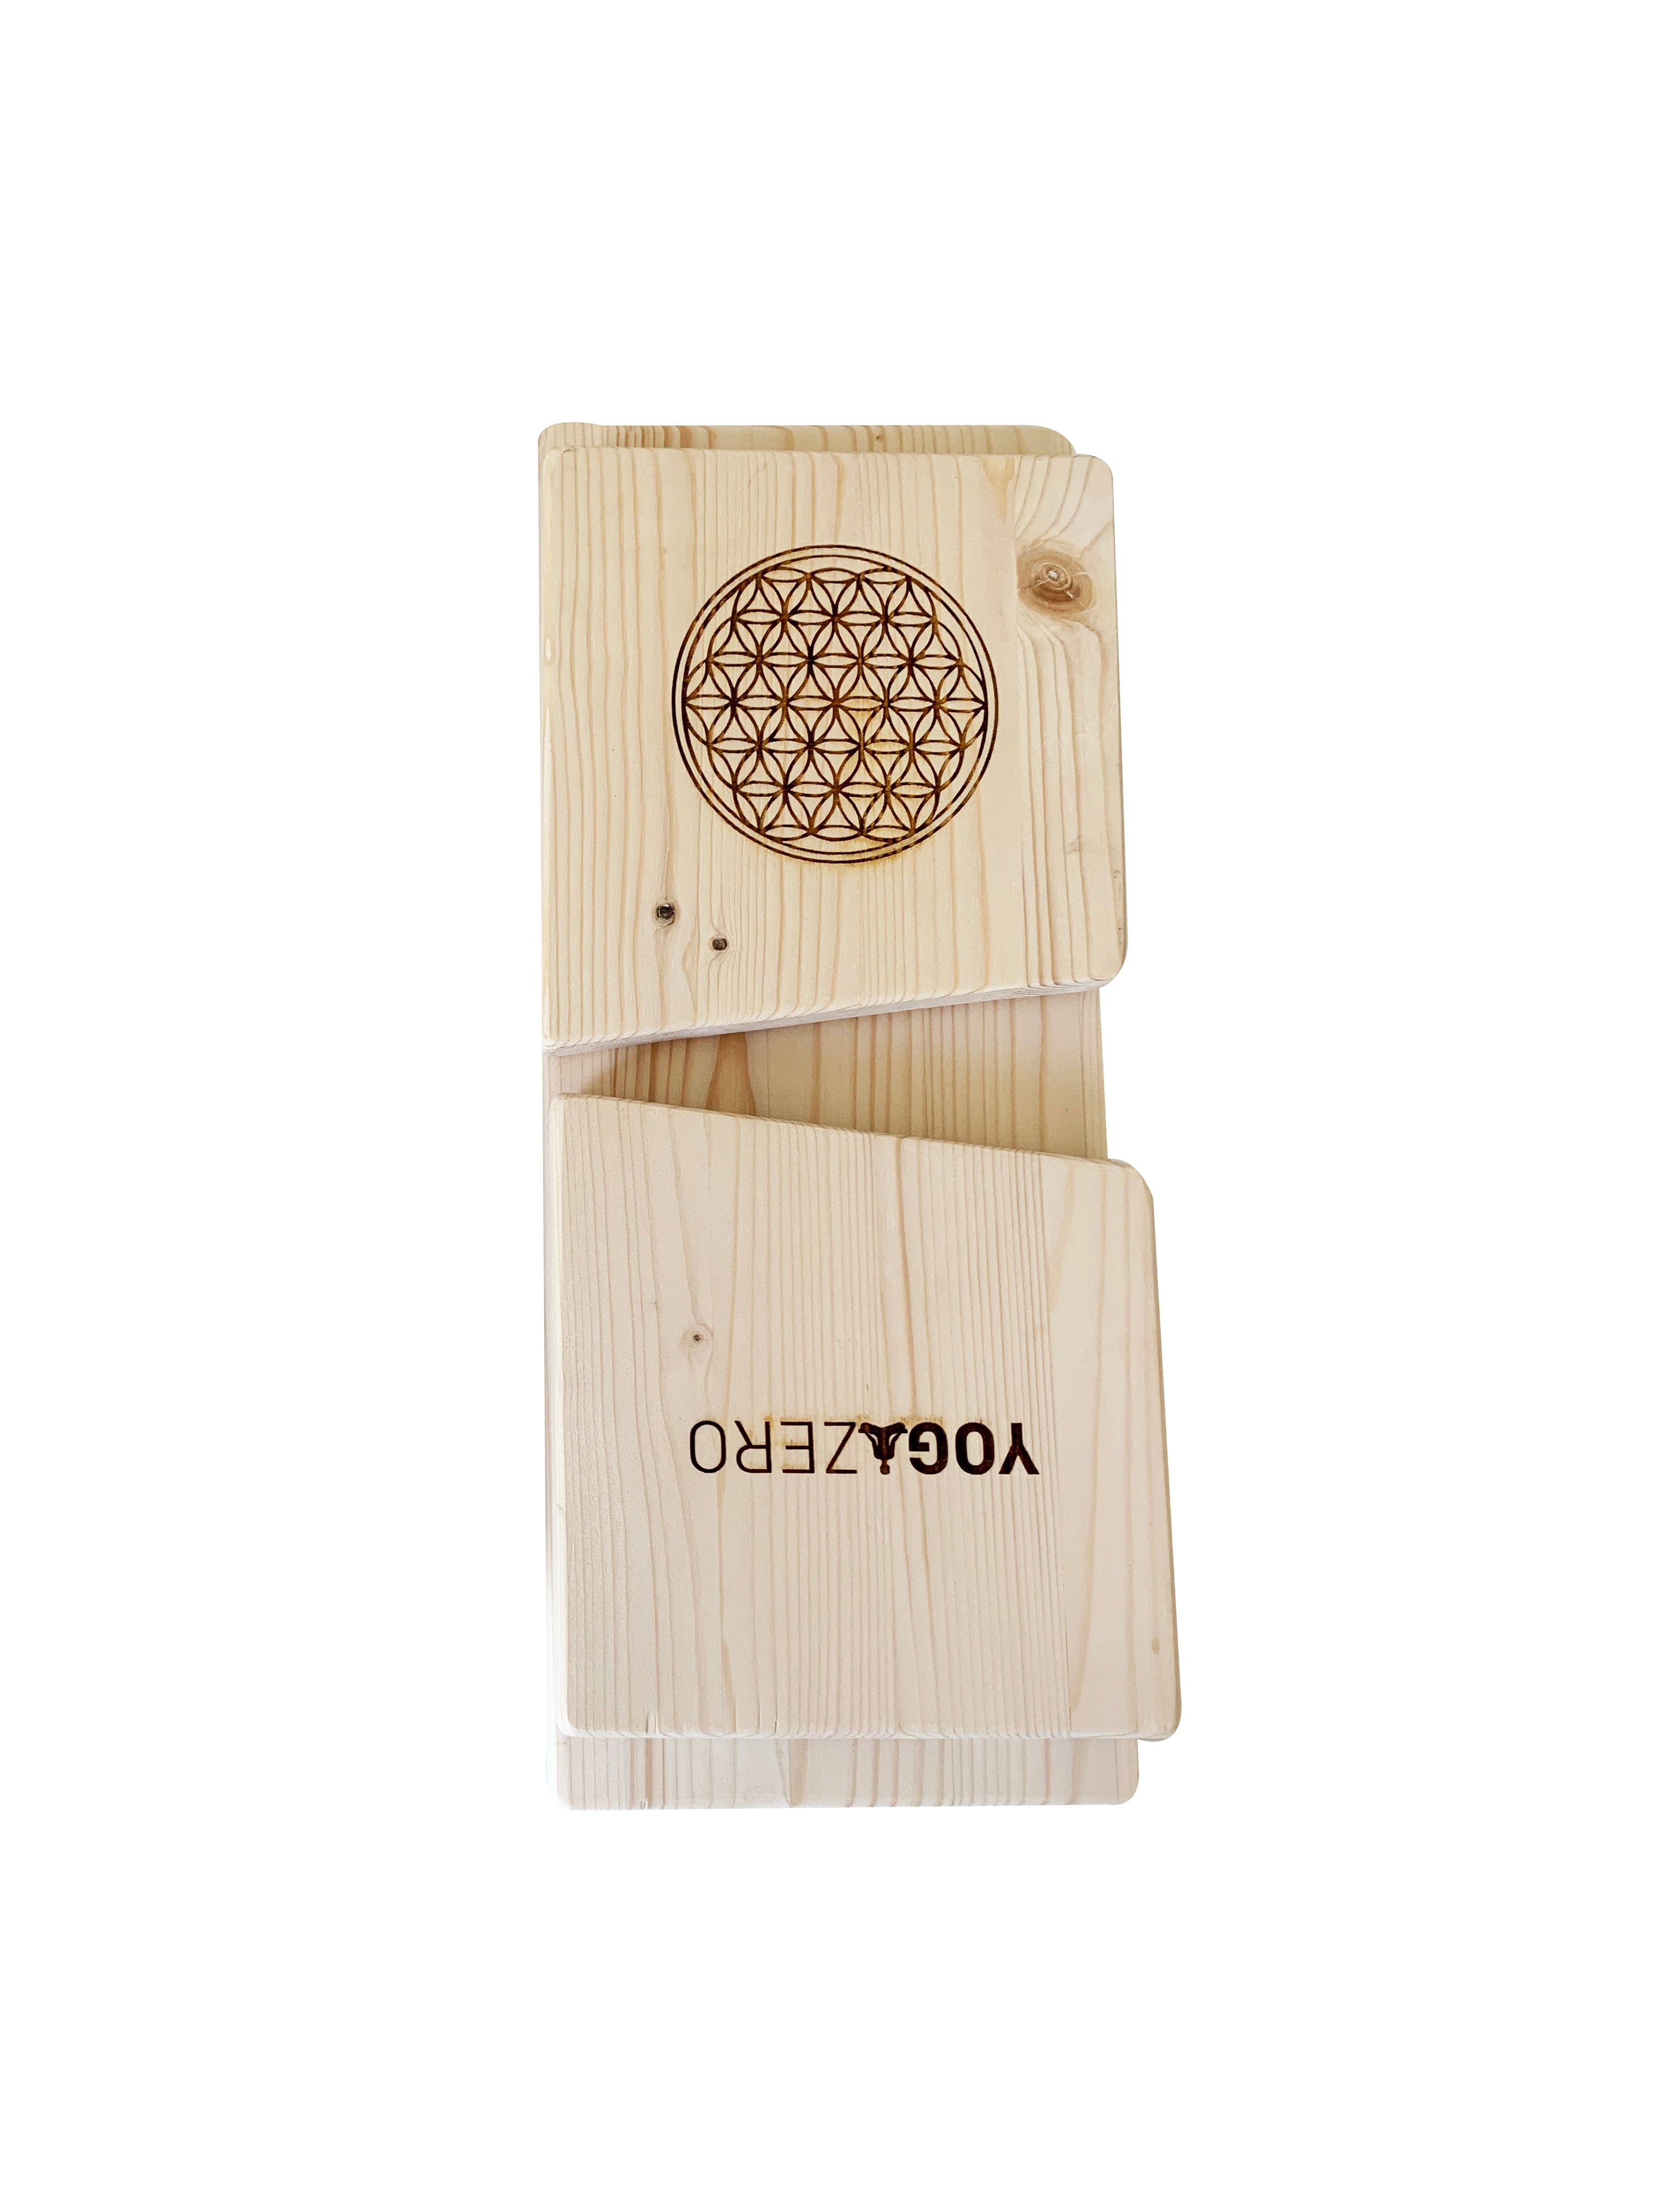 Yogazero Meditasyon Taburesi- Çantası hediye